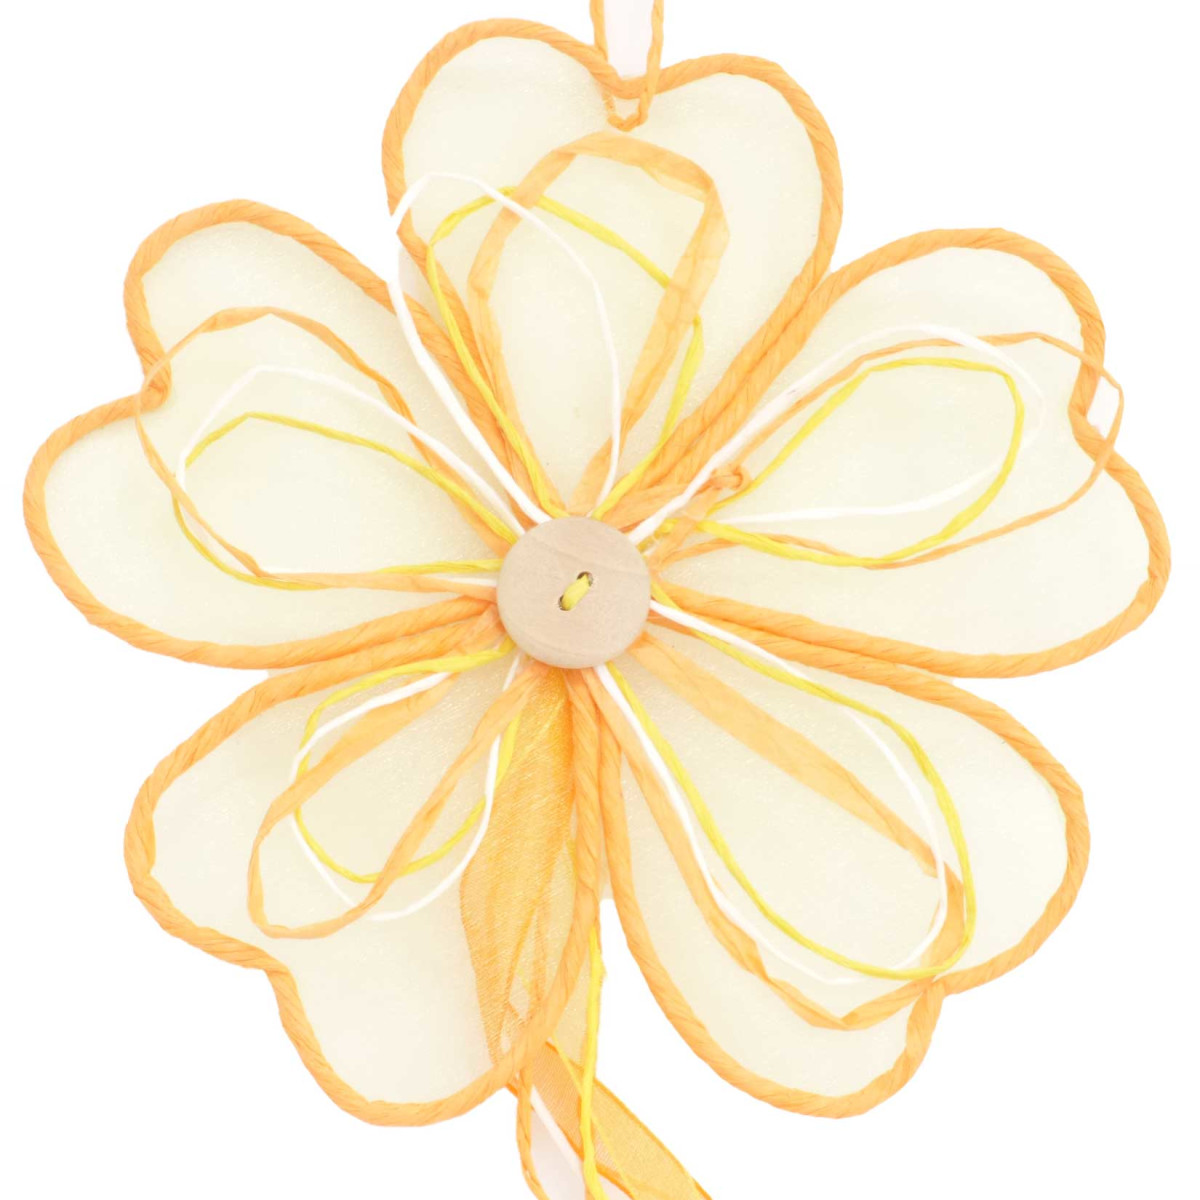 Deko Party Girlande Blume 100 cm  Farbe Mandarin für...